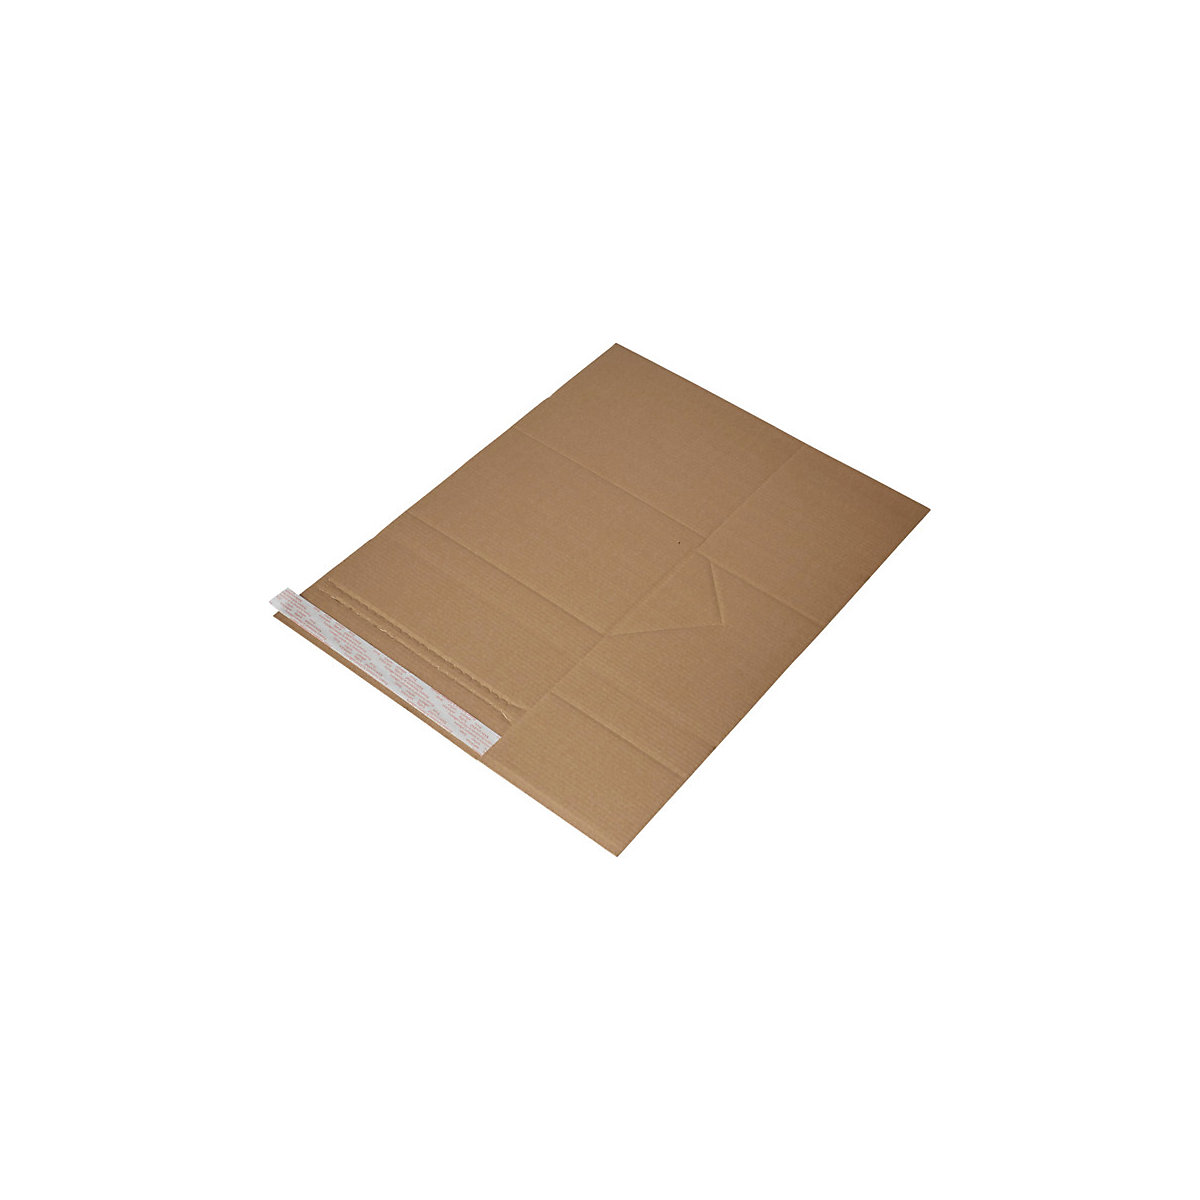 Imballaggio universale Drehfix – flow, con chiusura autoadesiva, lungh. x largh. 250 x 185 mm, a partire da 150 pz.-5